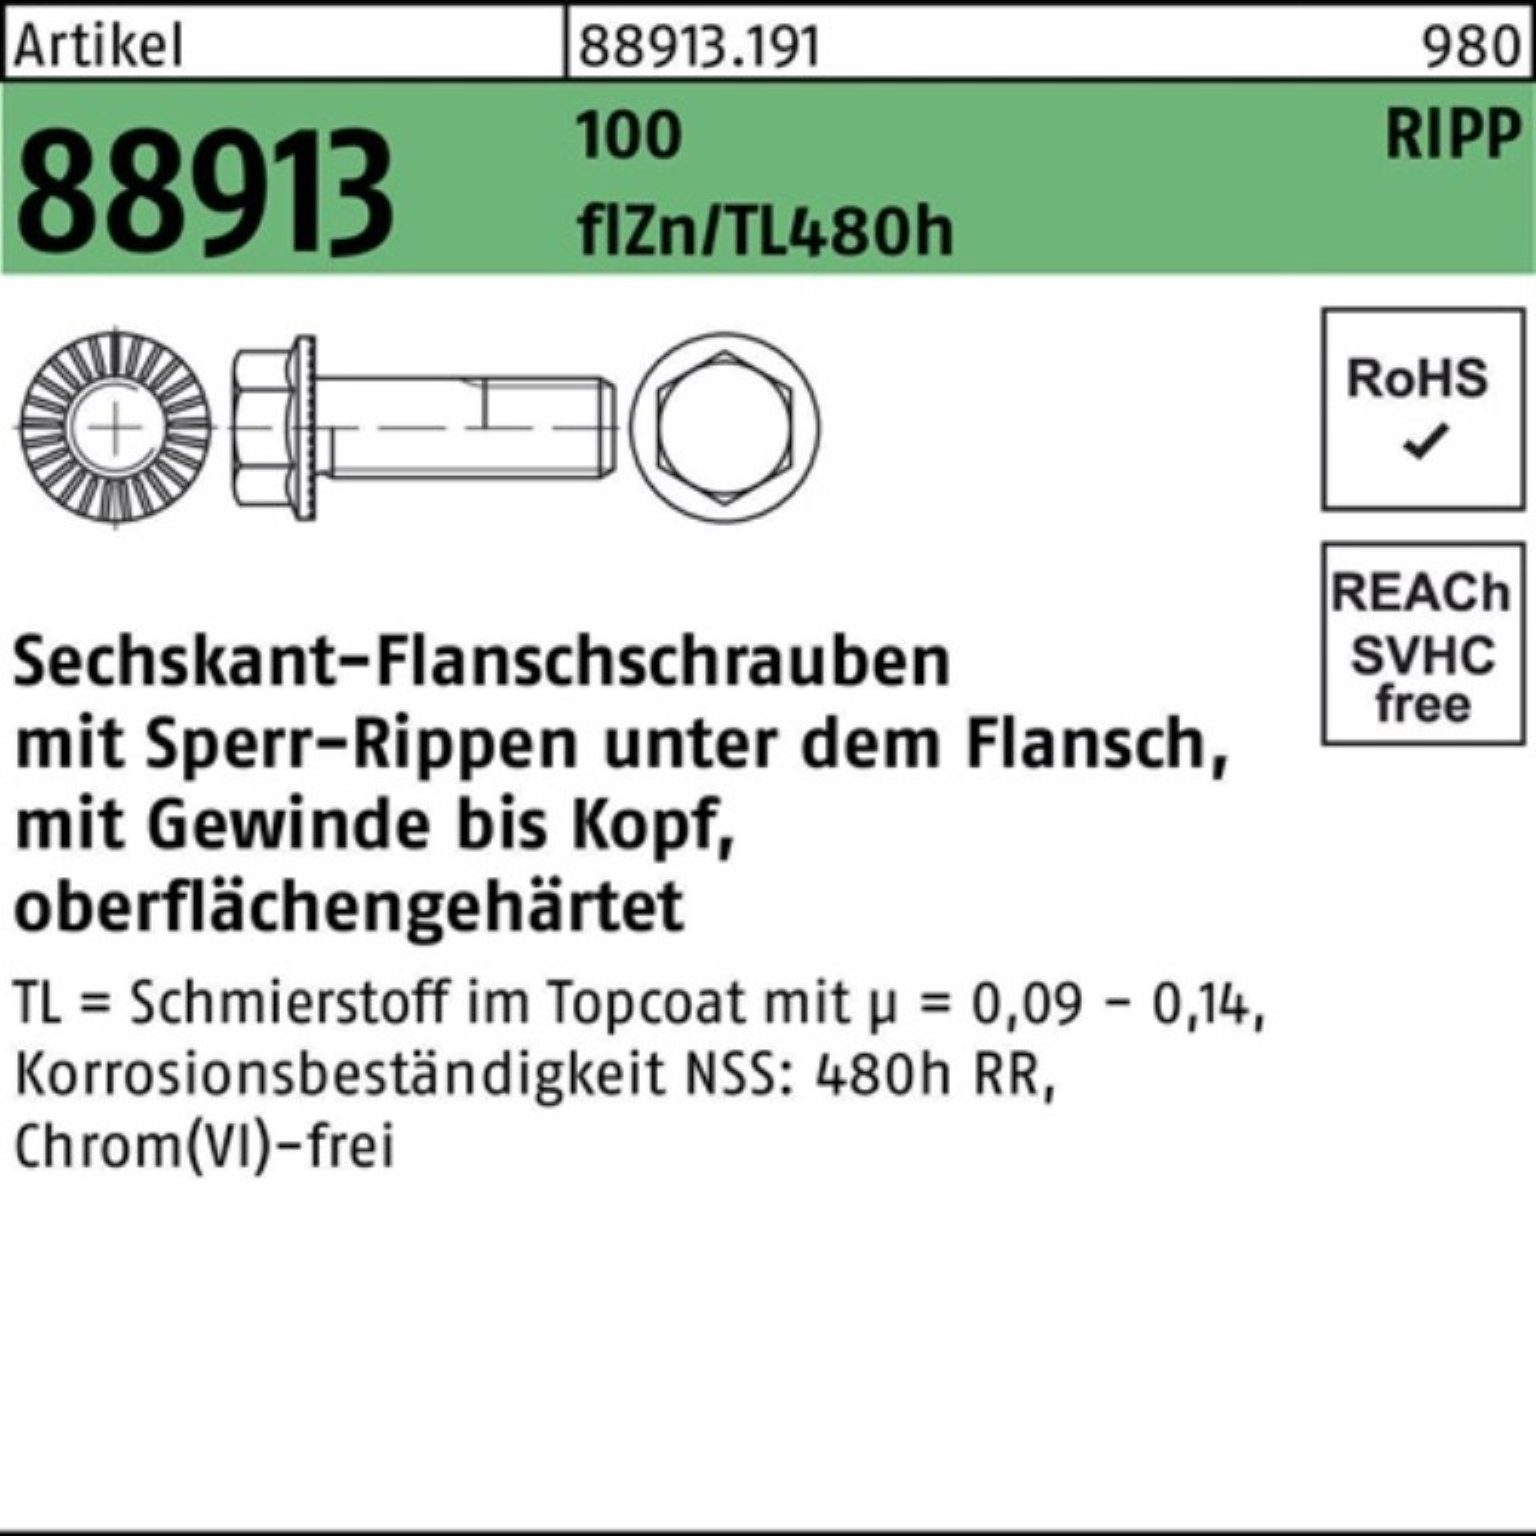 Reyher Schraube 100er Pack Sechskantflanschschraube R 88913 Sperr-Ripp VG M16x55 100 f